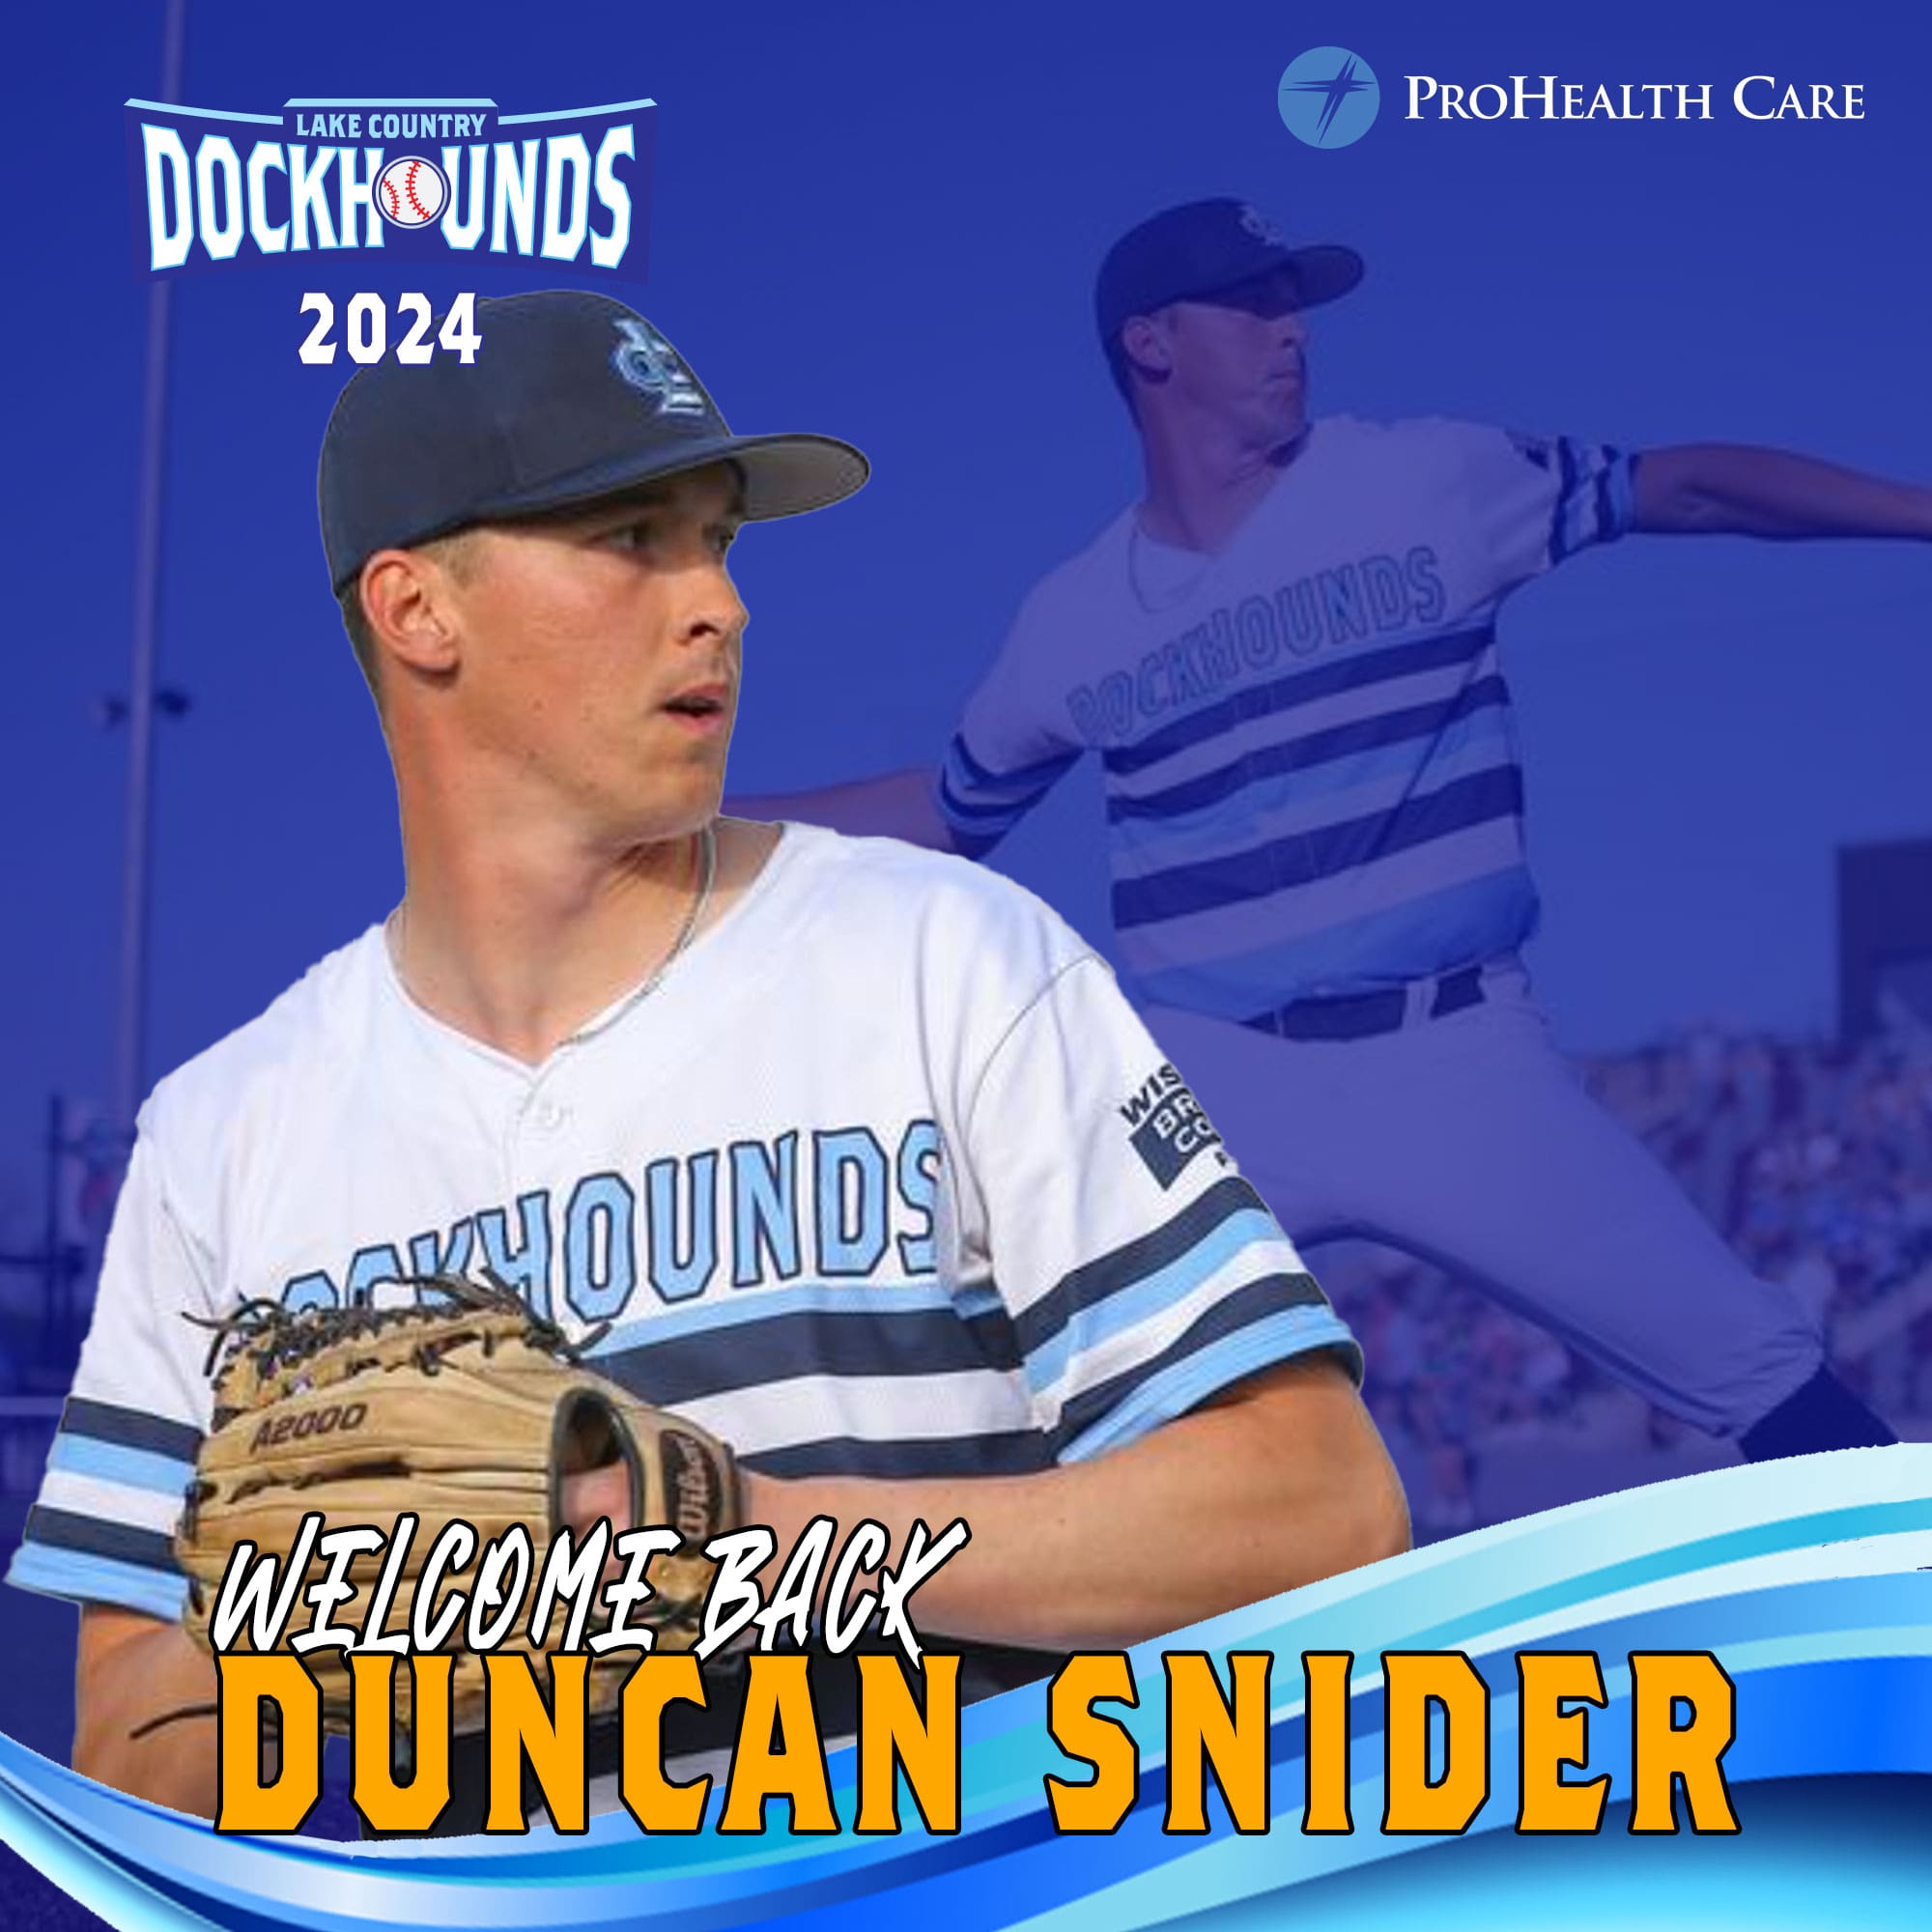 Welcome back Duncan Snider